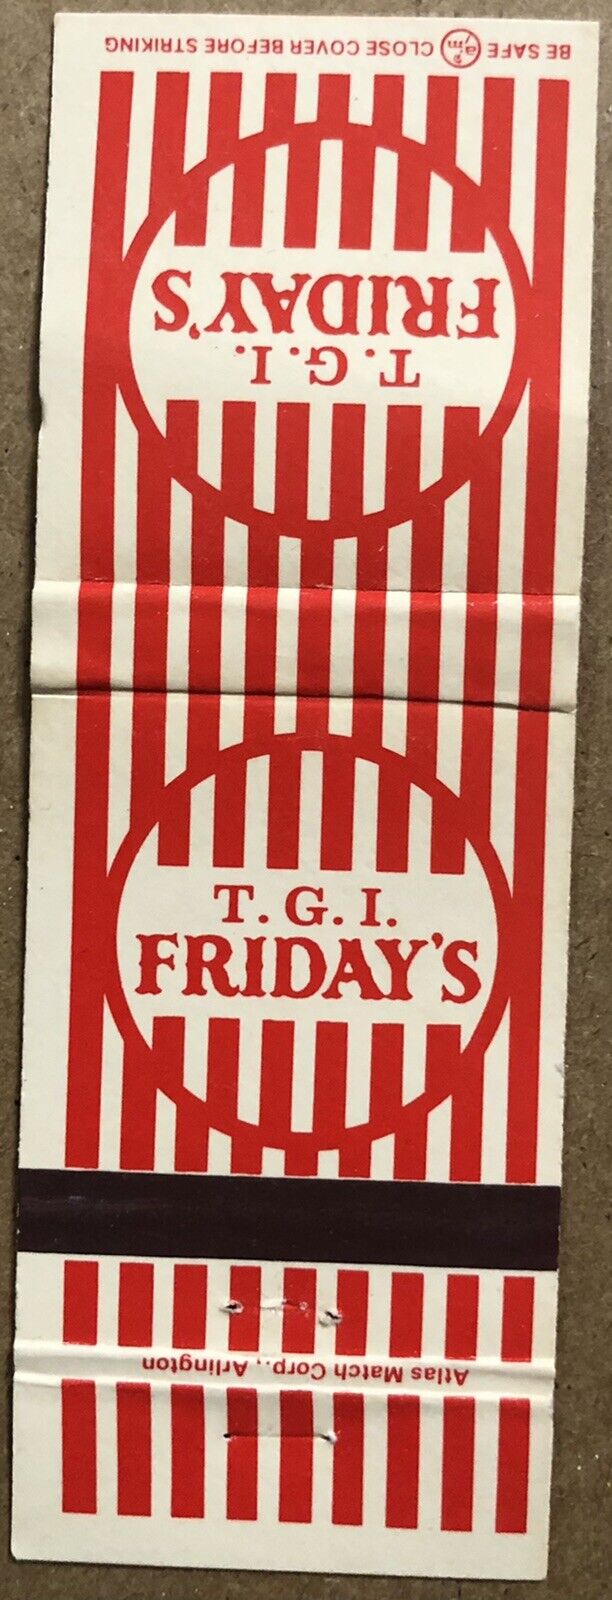 Vintage 20 Strike Matchbook Cover - T. G. I. Friday’s Restaurant